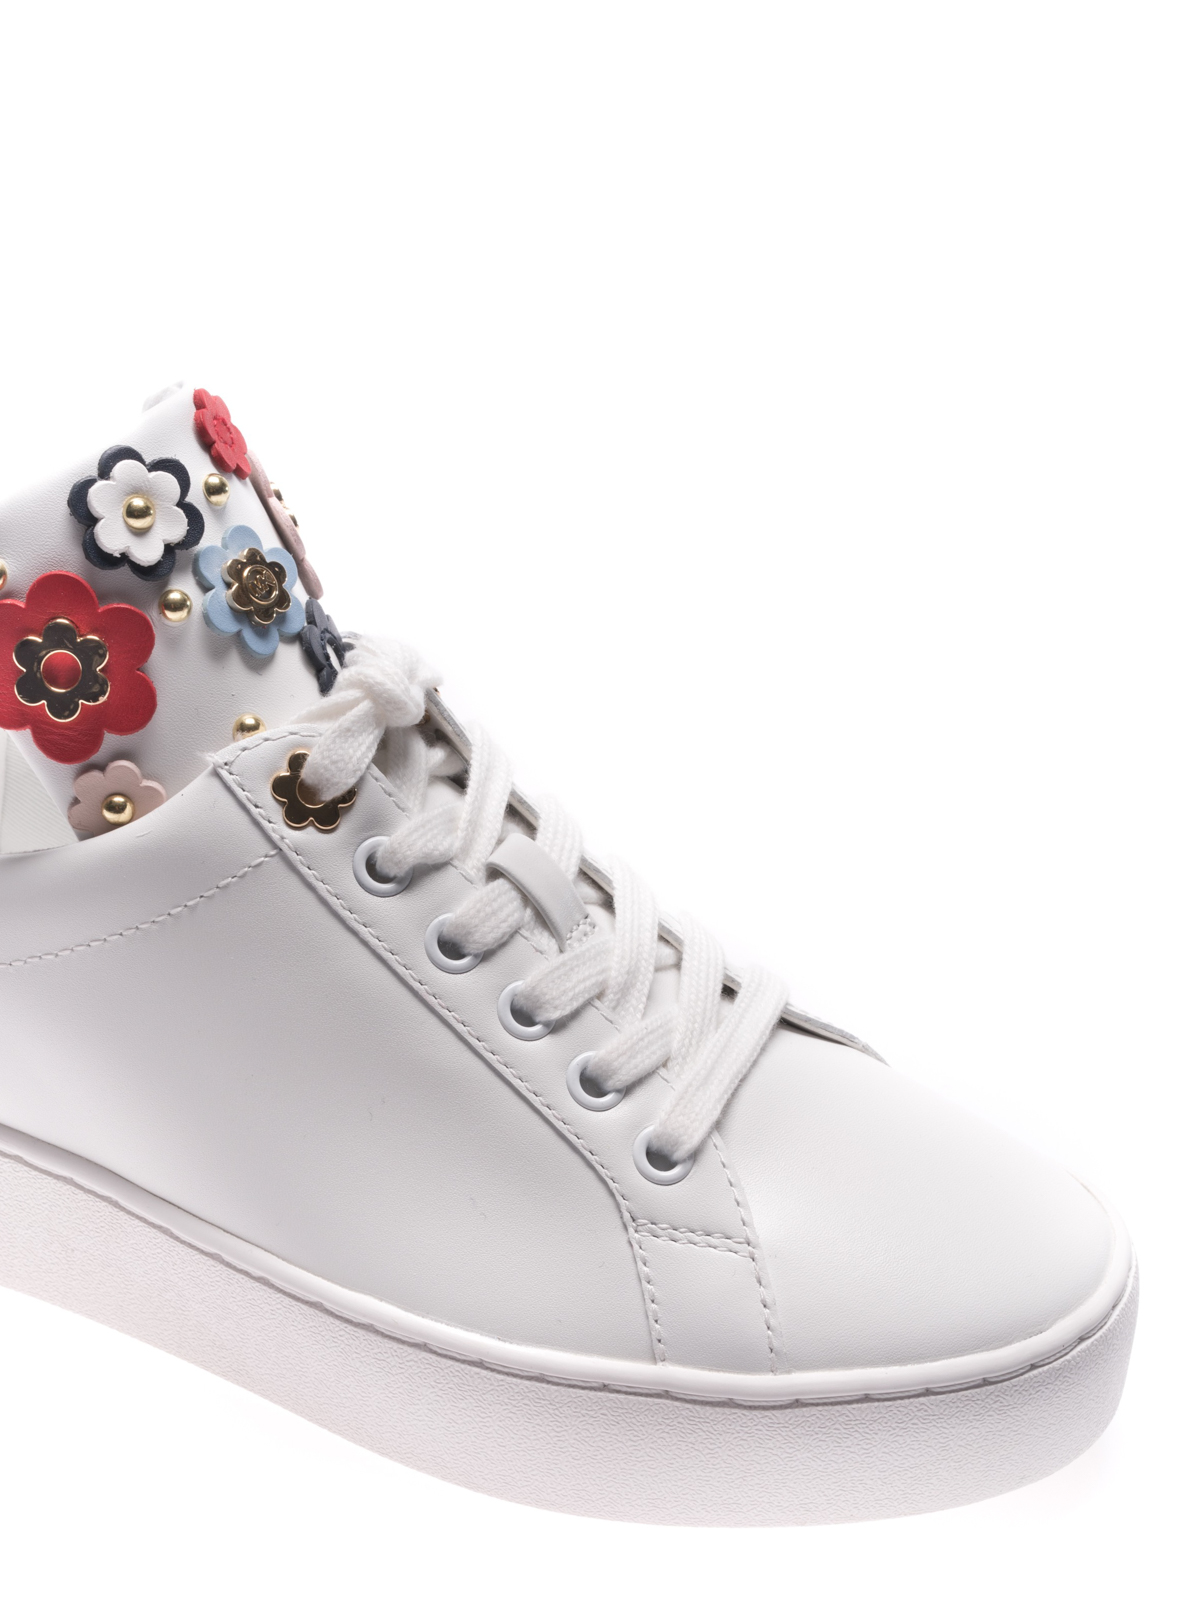 michael kors flower sneakers